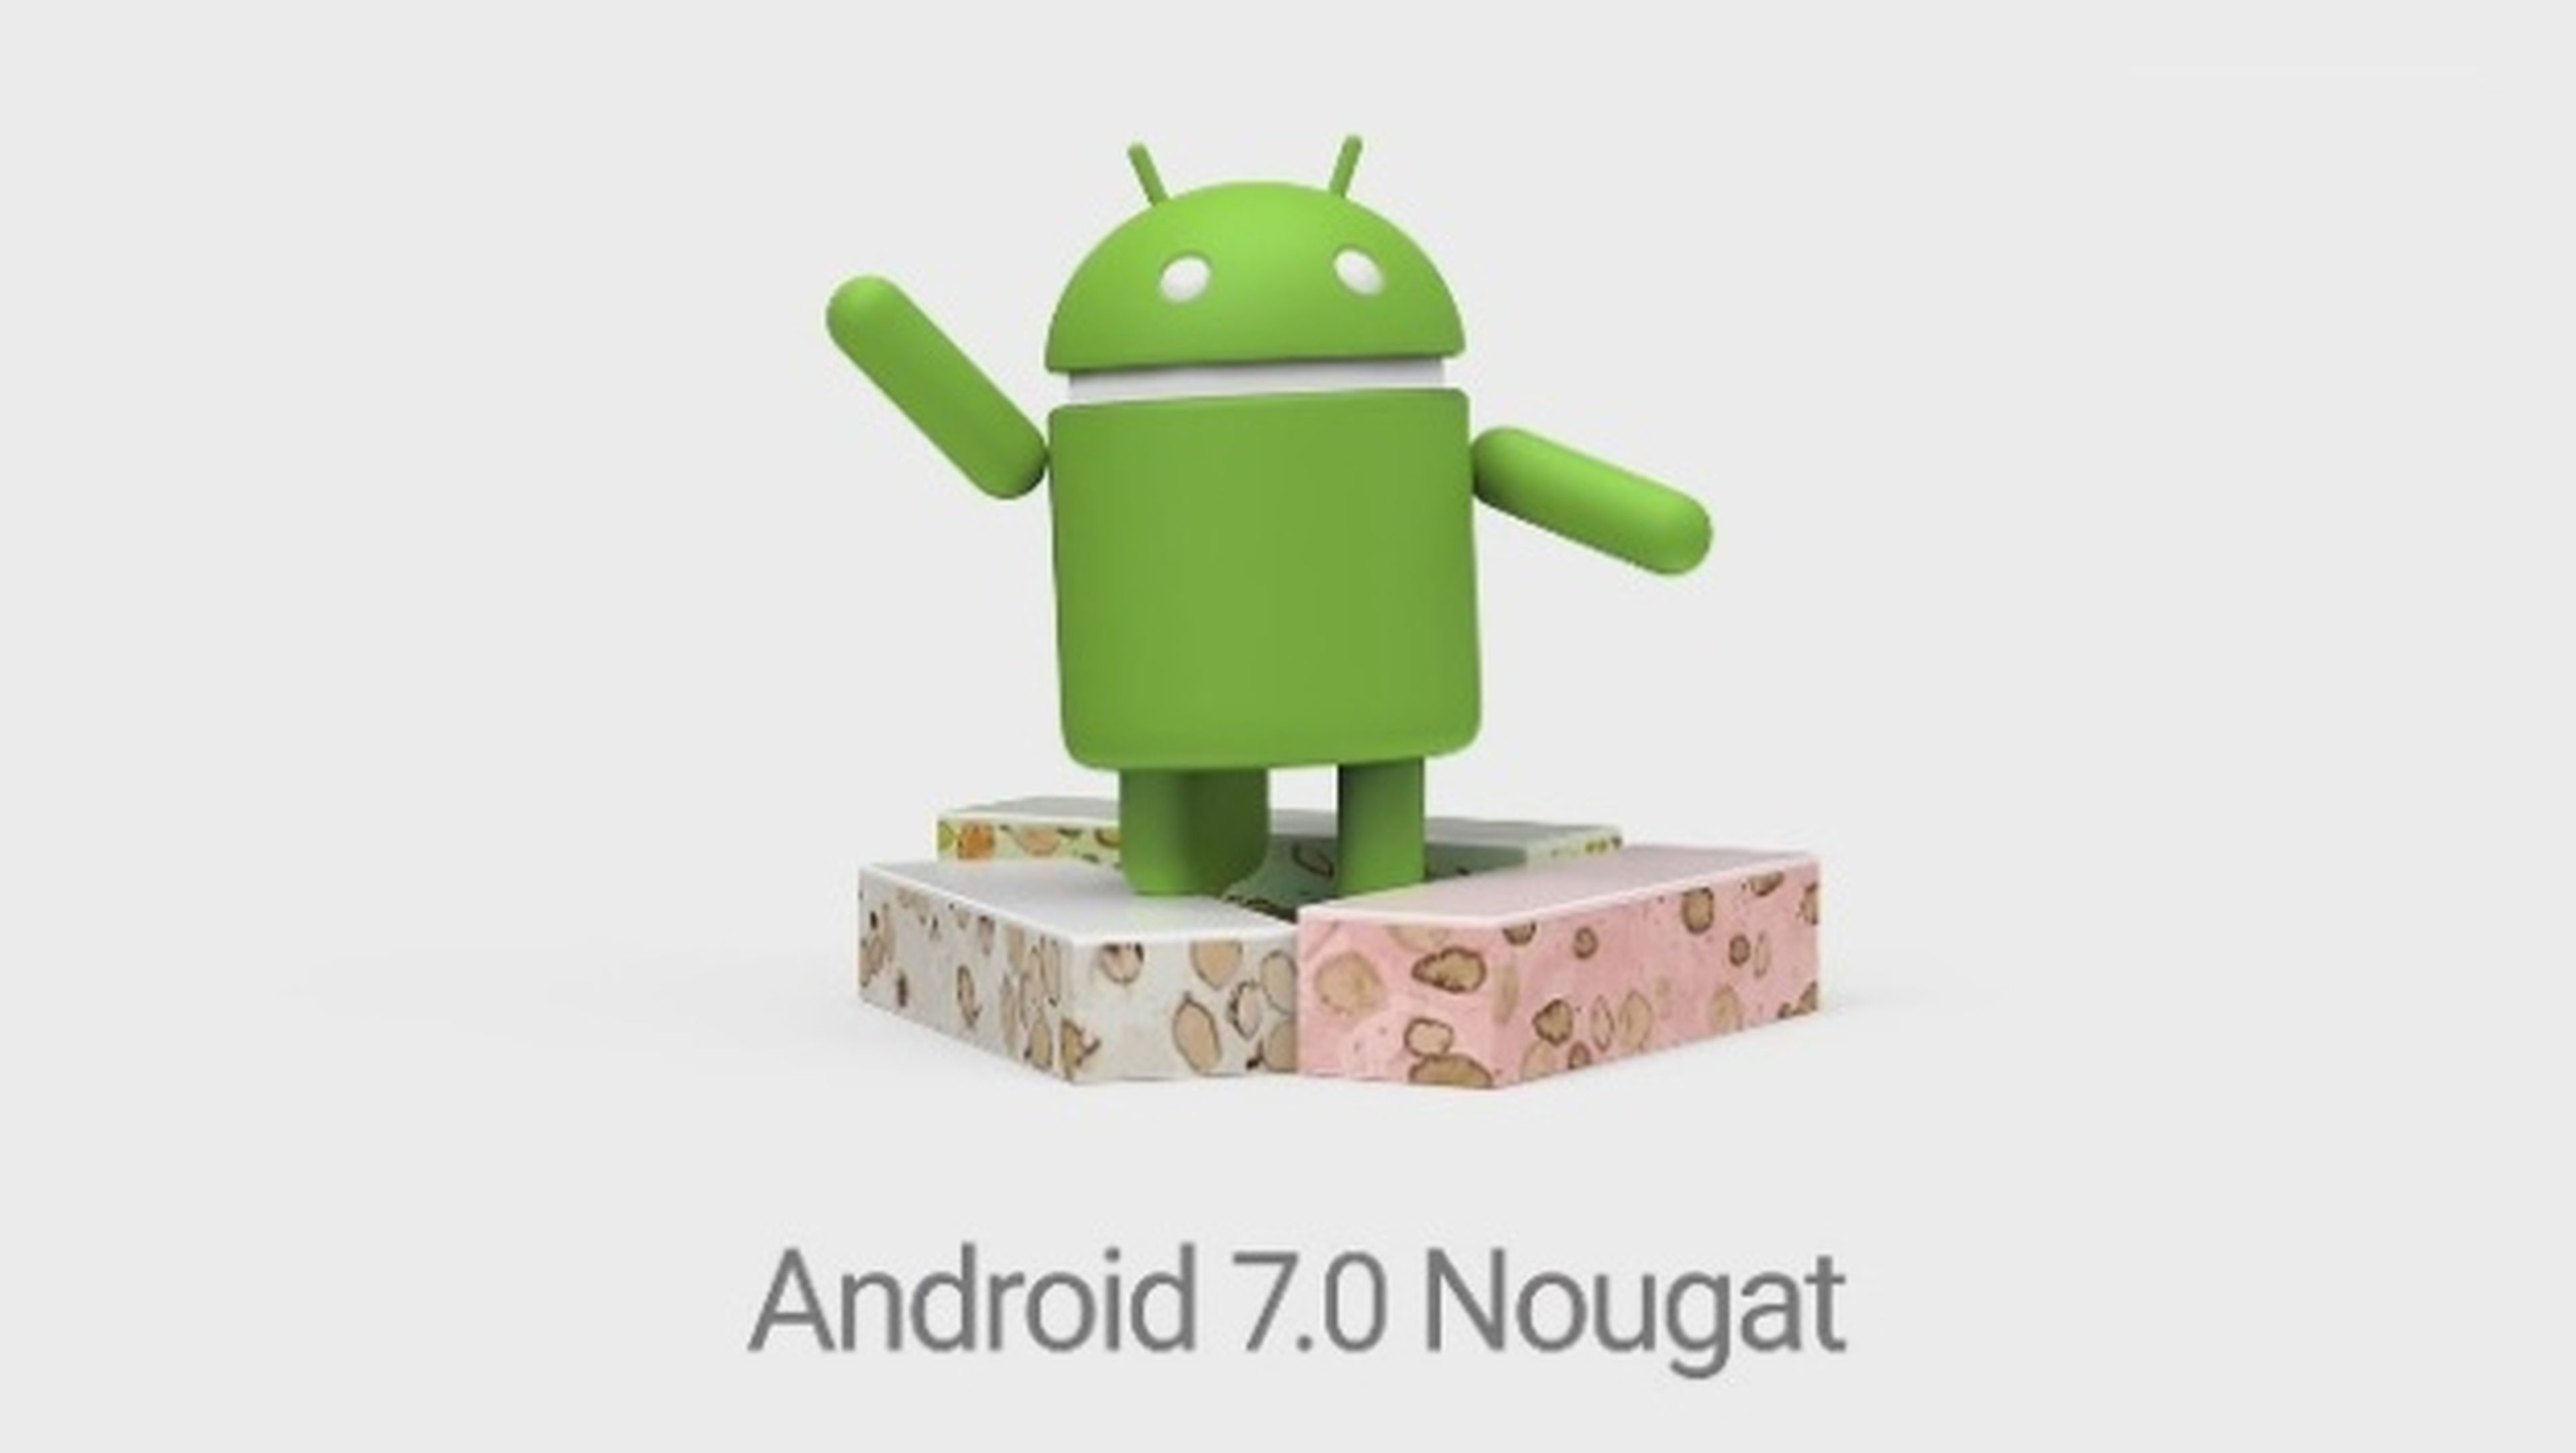 Android 7.0 Nougat se lanzará el 22 de agosto según Telus